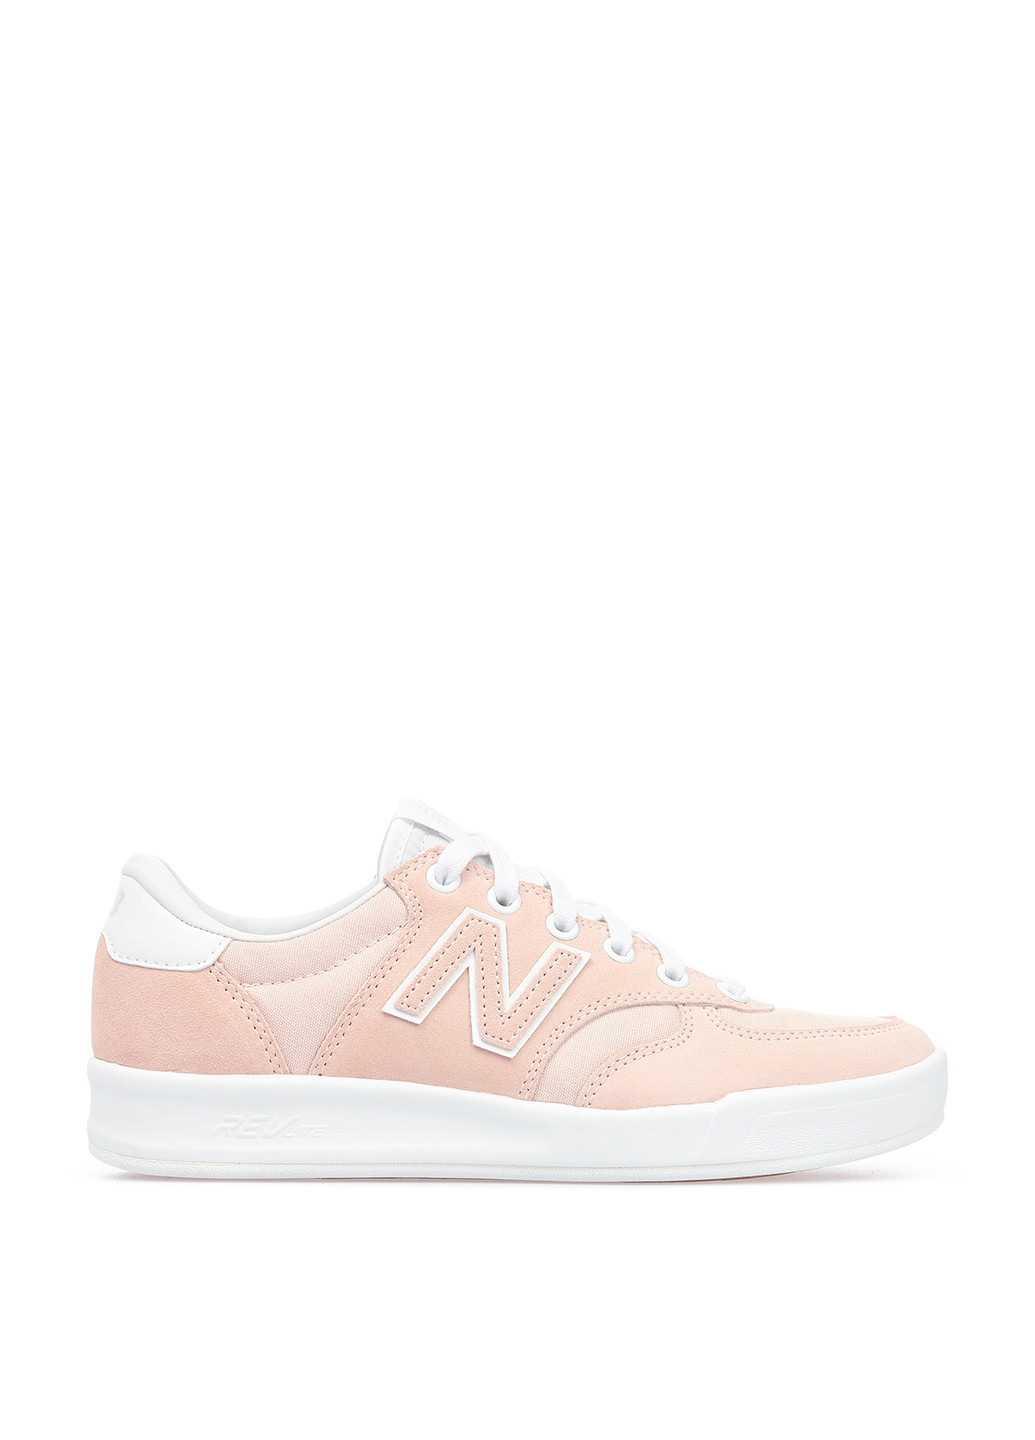 Светло-розовые демисезонные кроссовки New Balance 300.0